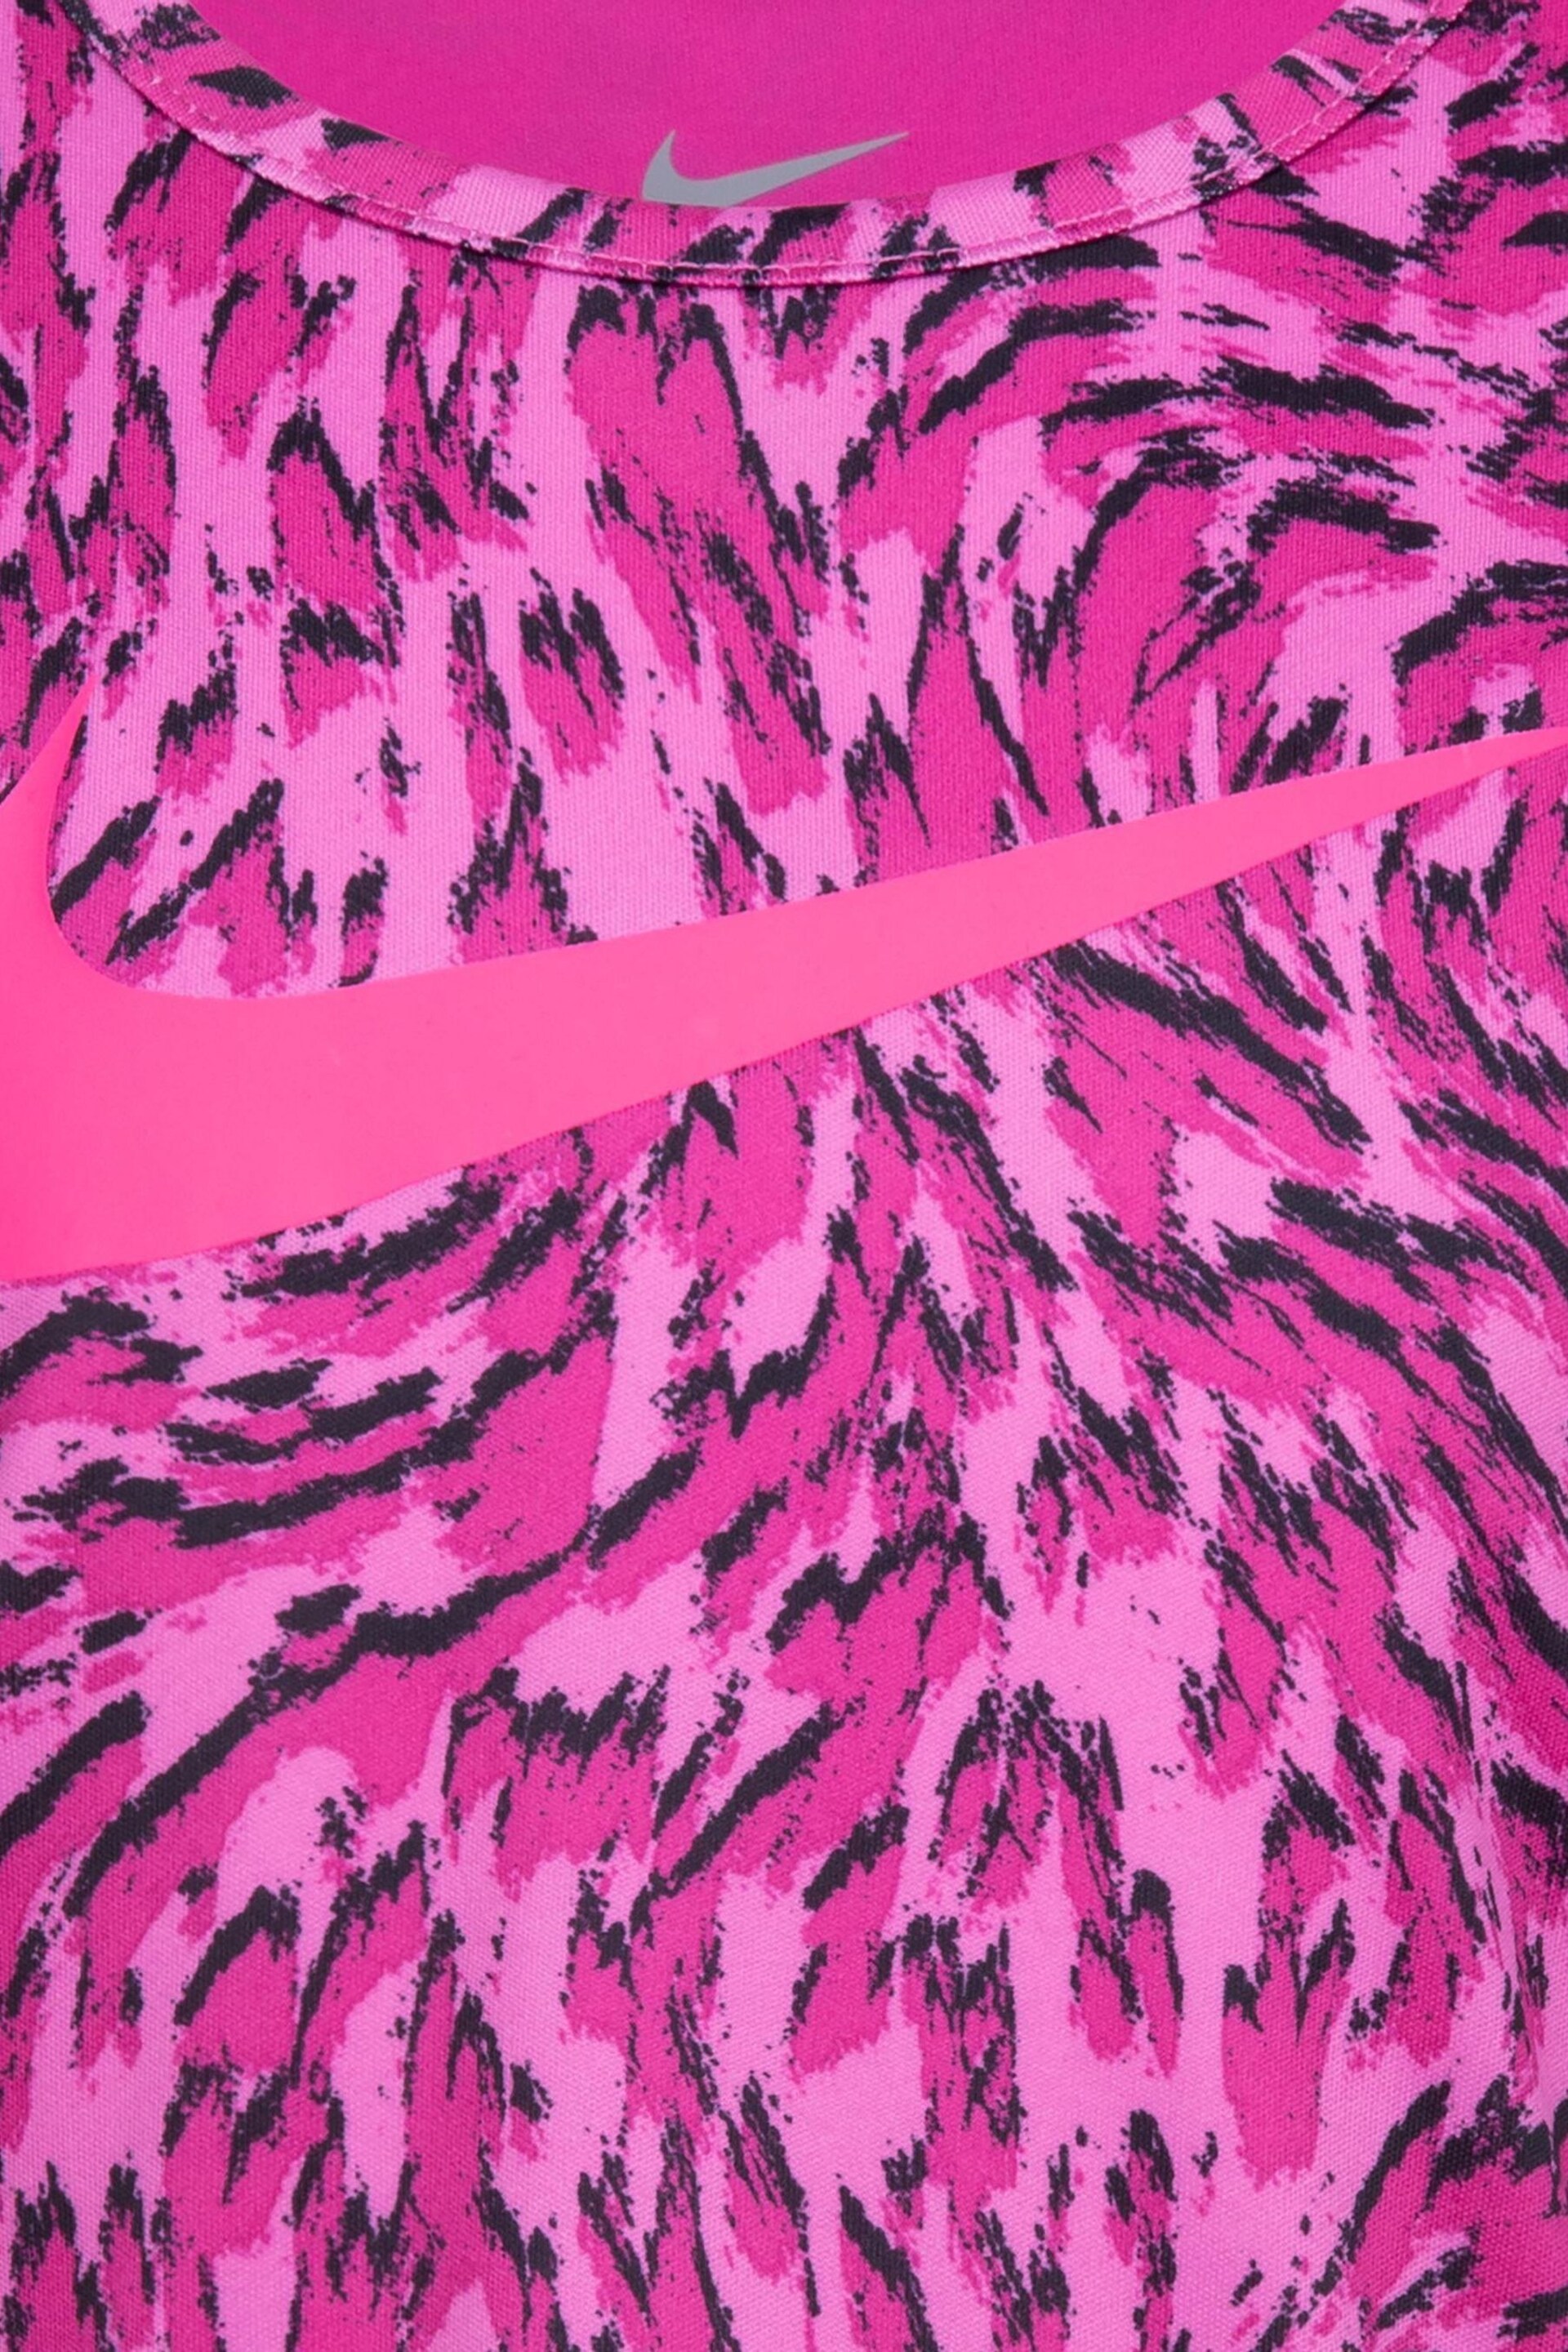 Nike Pink Little Kids Veneer Vest and Shorts Set - Image 4 of 7